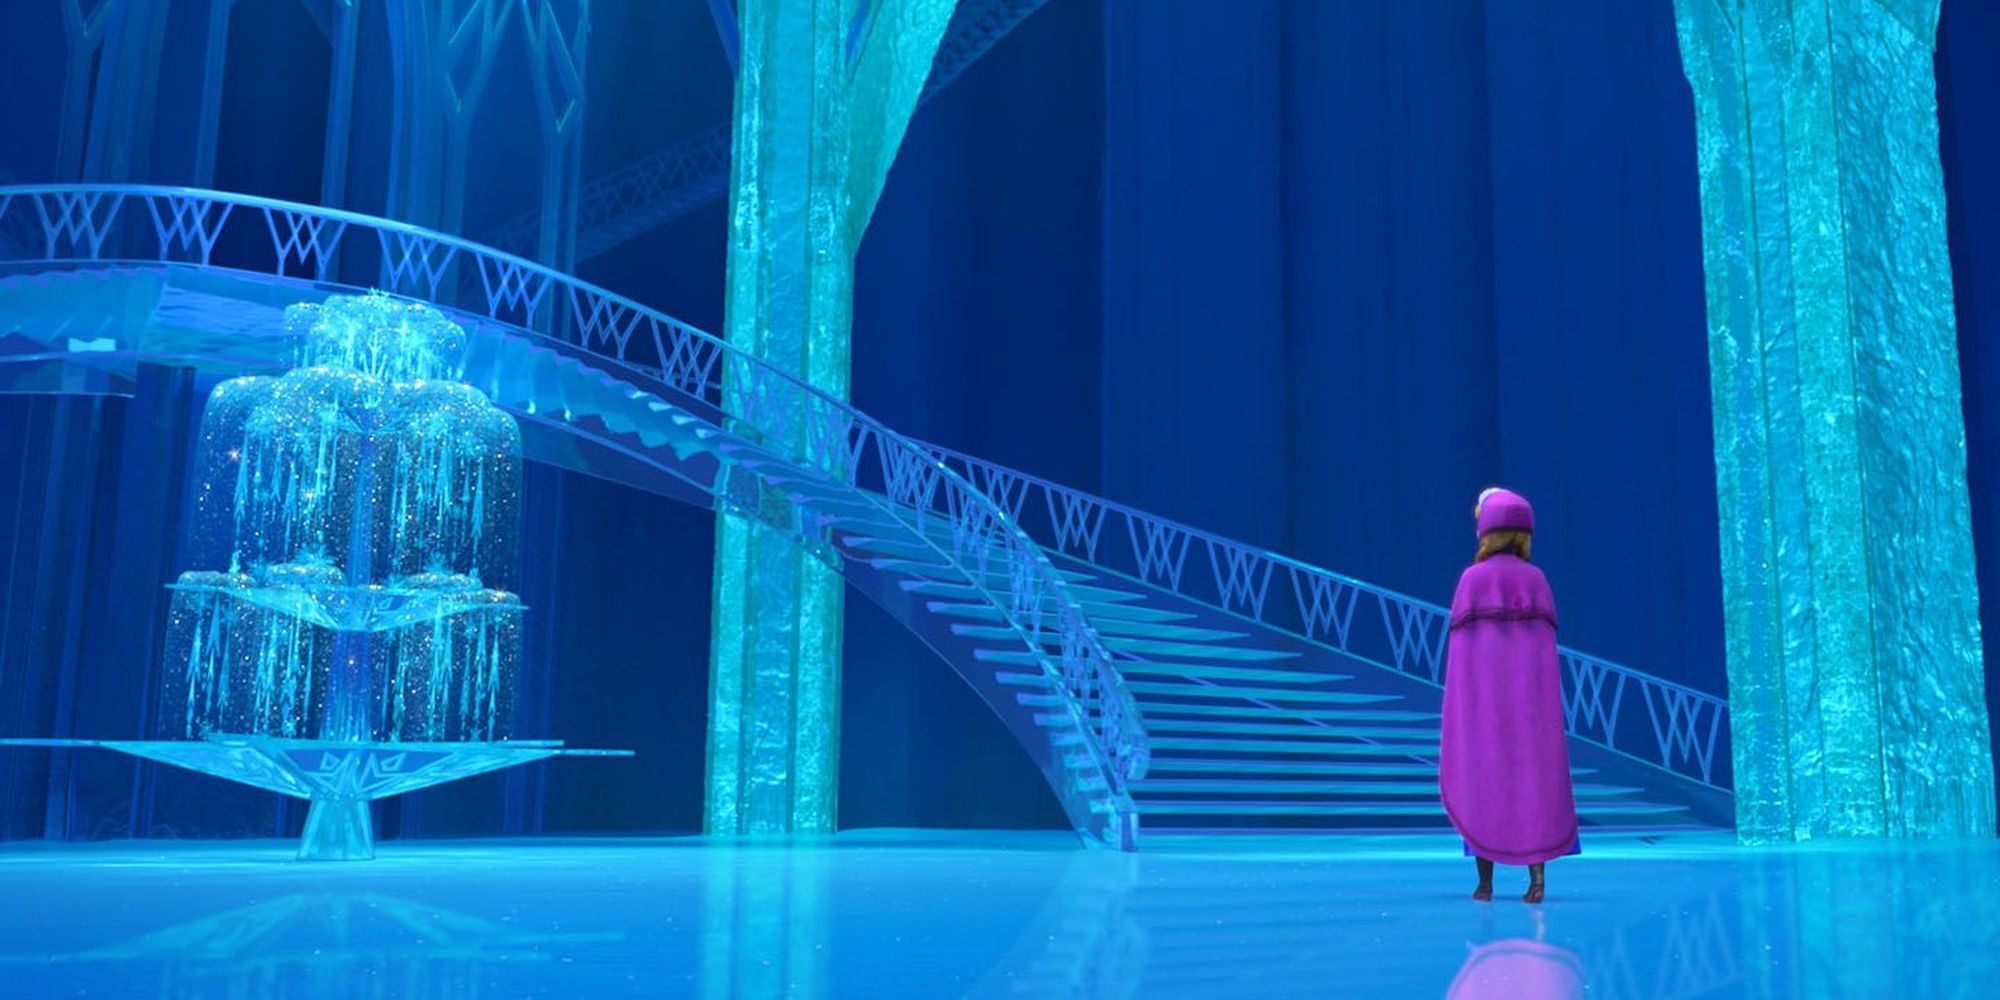 Anna entering Elsa's castle.